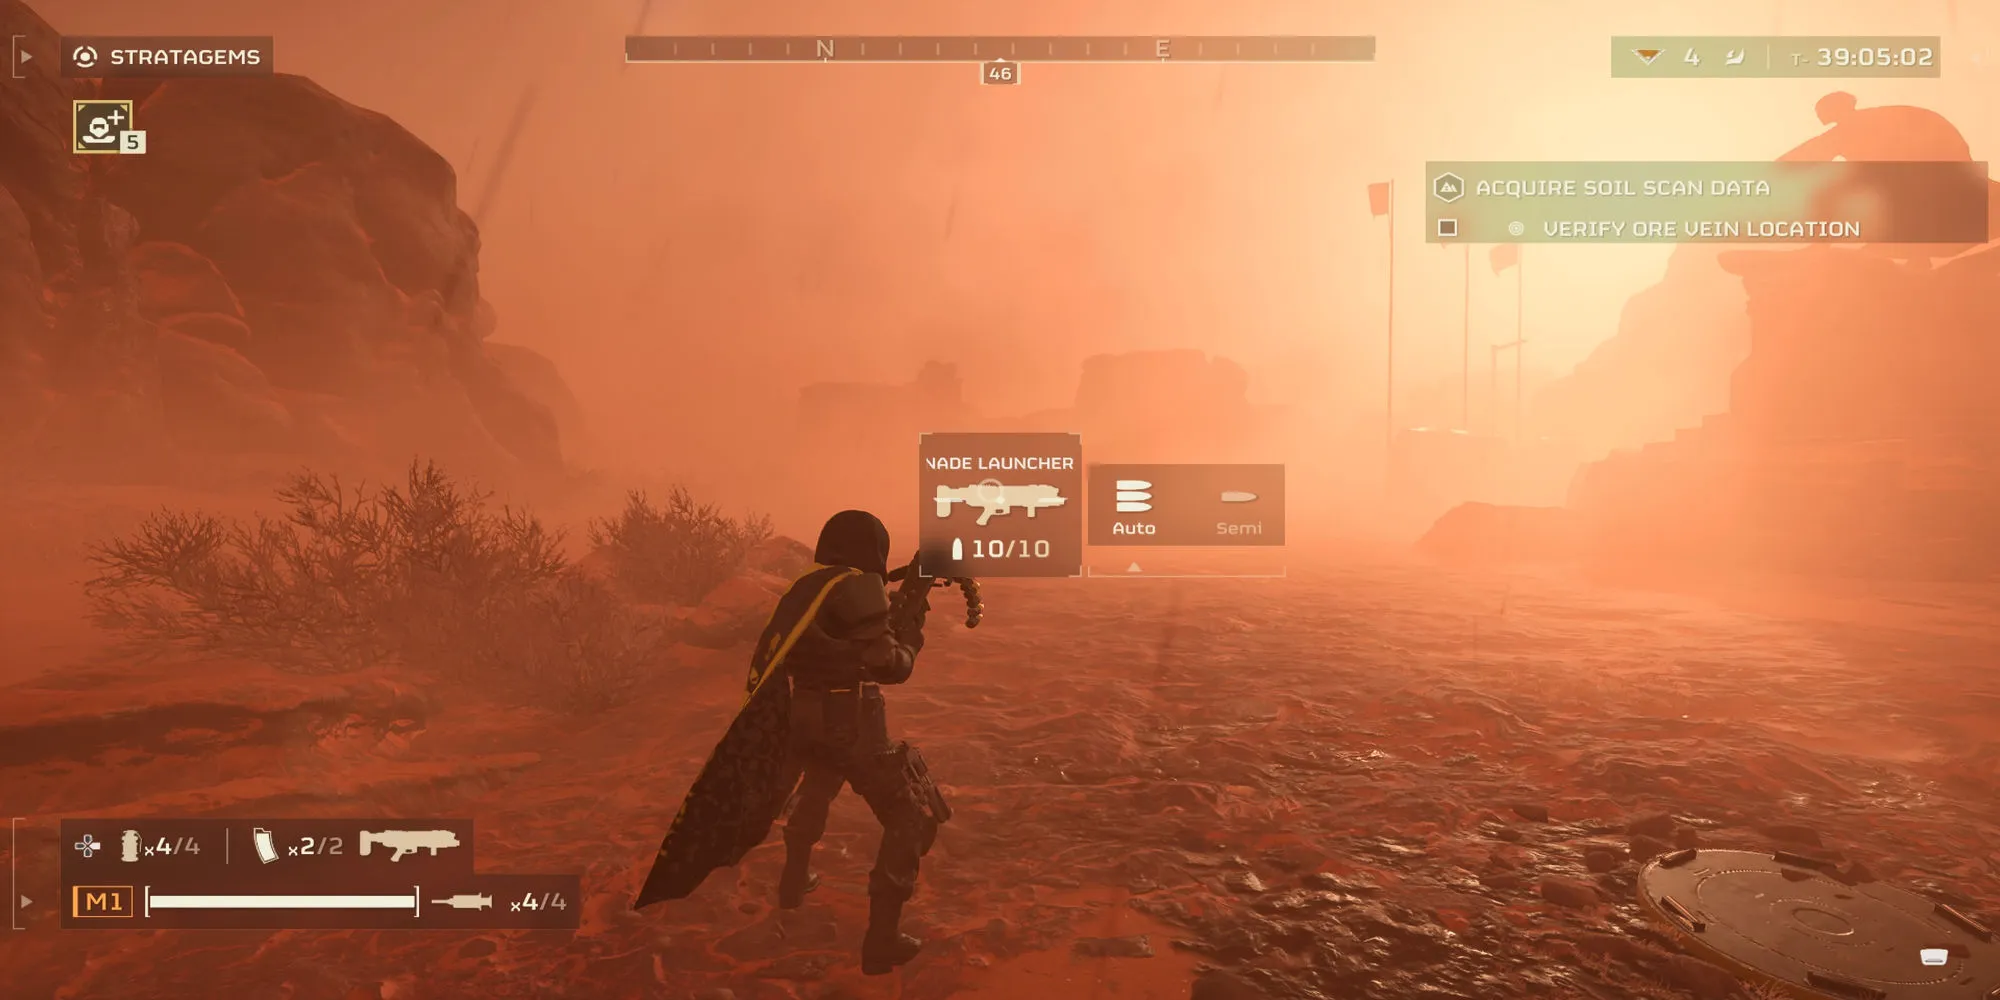 Un jugador ajusta la configuración del lanzagranadas durante una misión